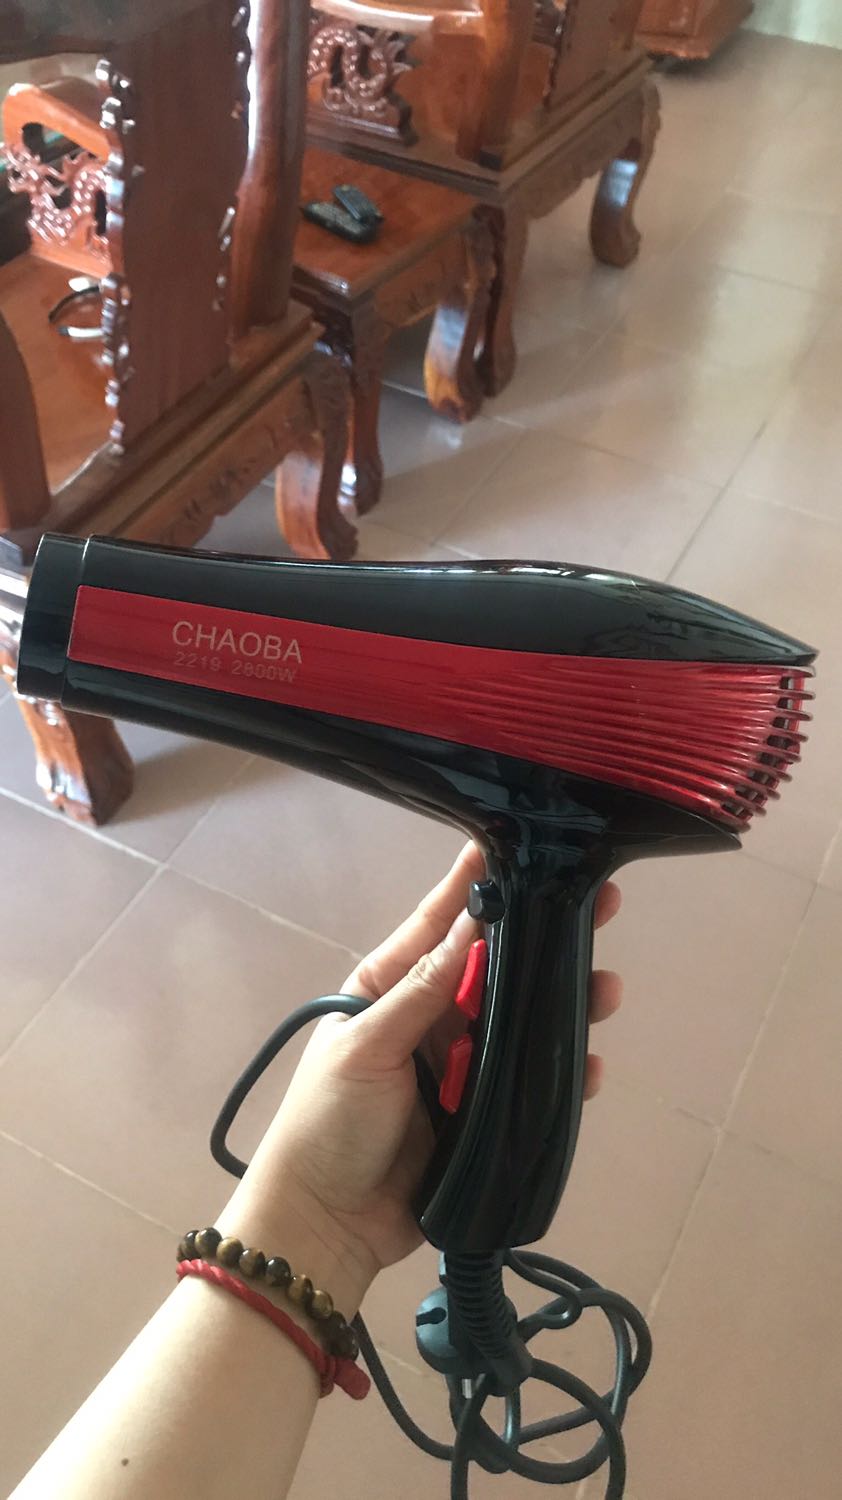 Máy sấy tóc, Máy sấy tóc Chaoba 2800 công suất cao, nhanh và đẹp. Giá tốt